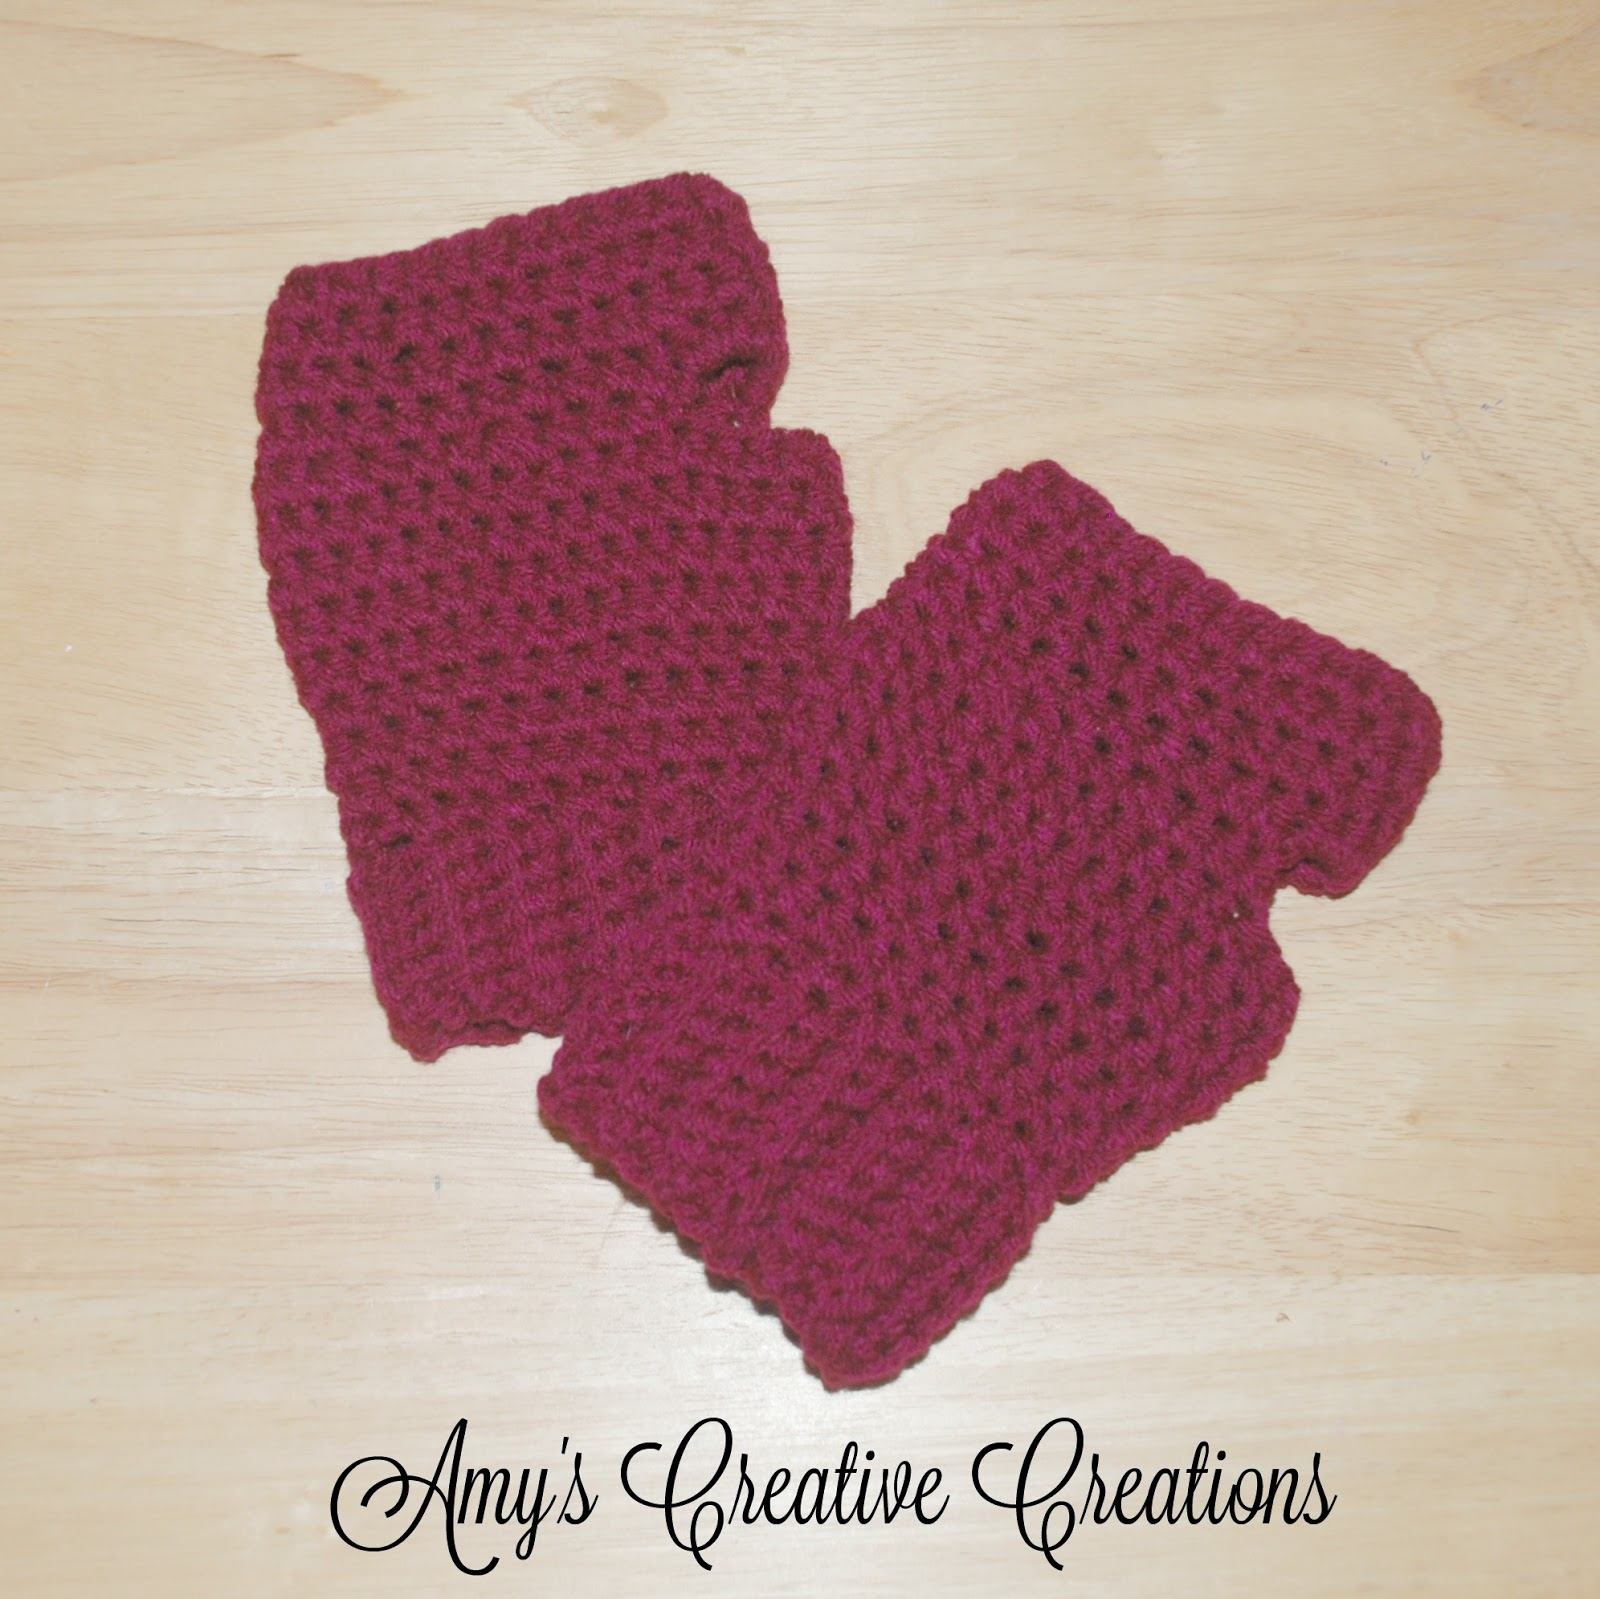 Hello Kitty Fingerless Gloves Crochet Pattern Amys Crochet Creative Creations Crochet Fingerless Gloves Tutorial